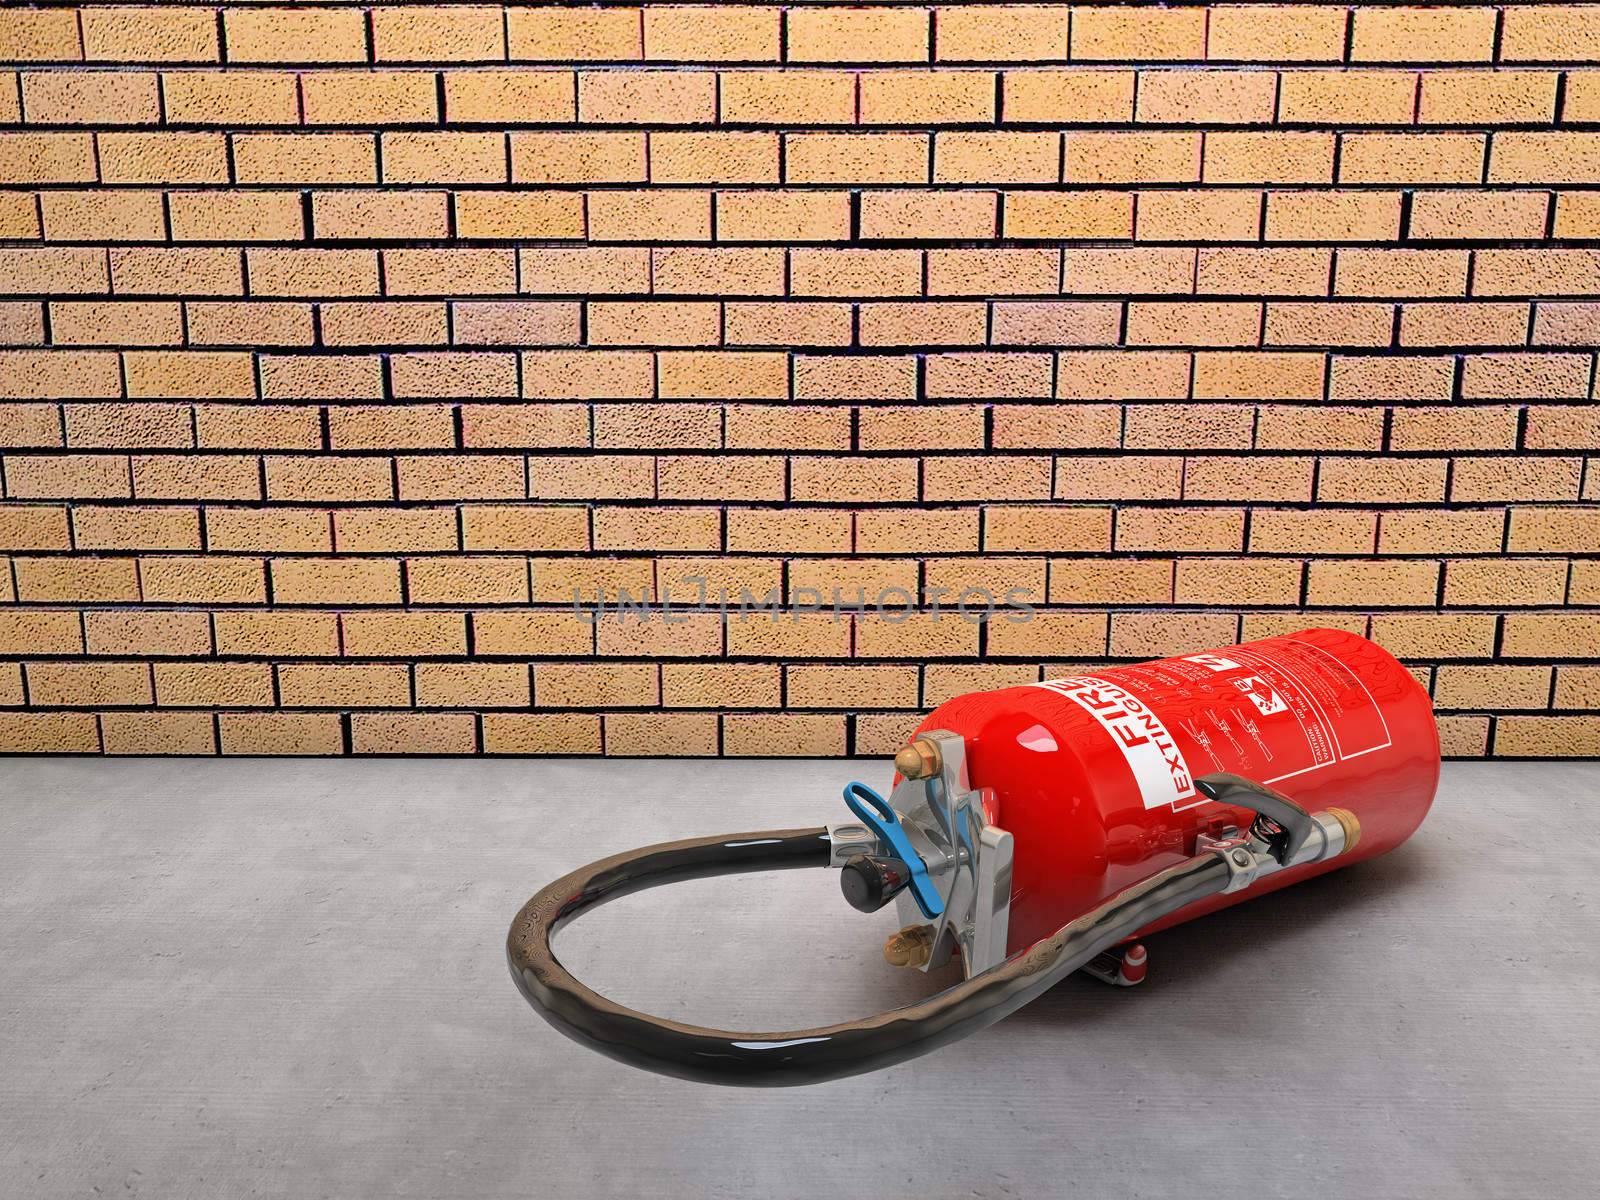 Extinguisher by dynamicfoto